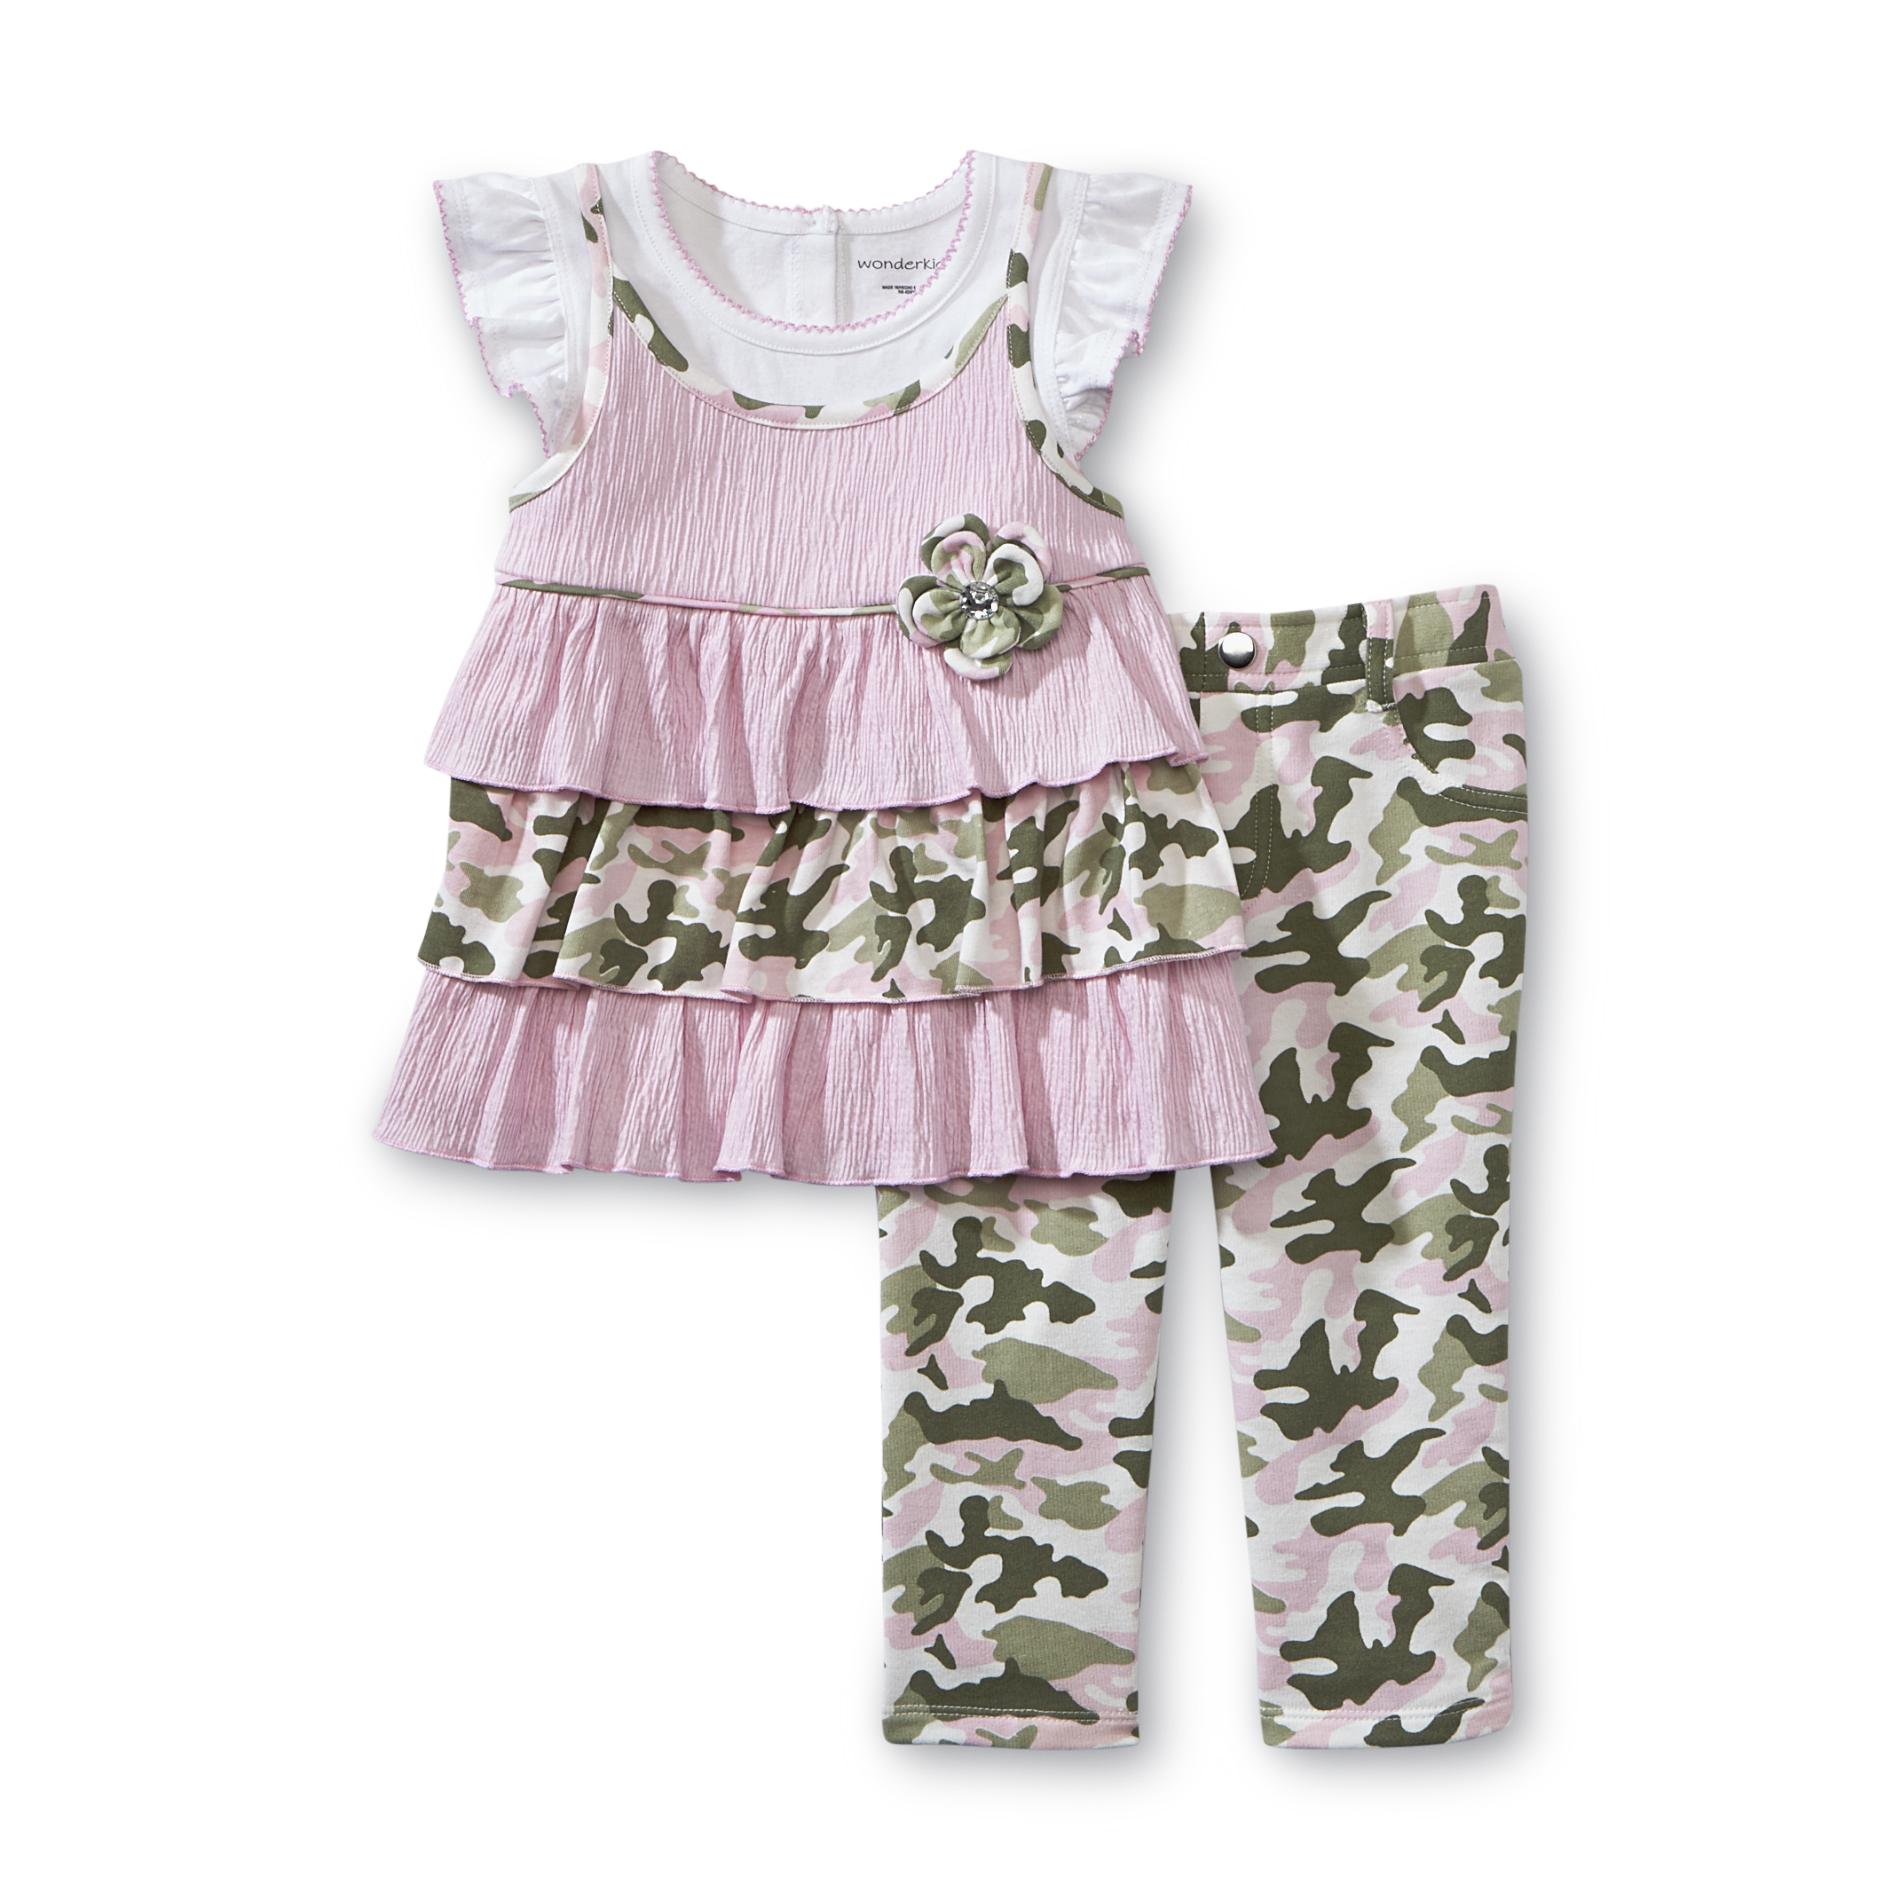 WonderKids Infant & Toddler Girl's Tunic Top & Leggings